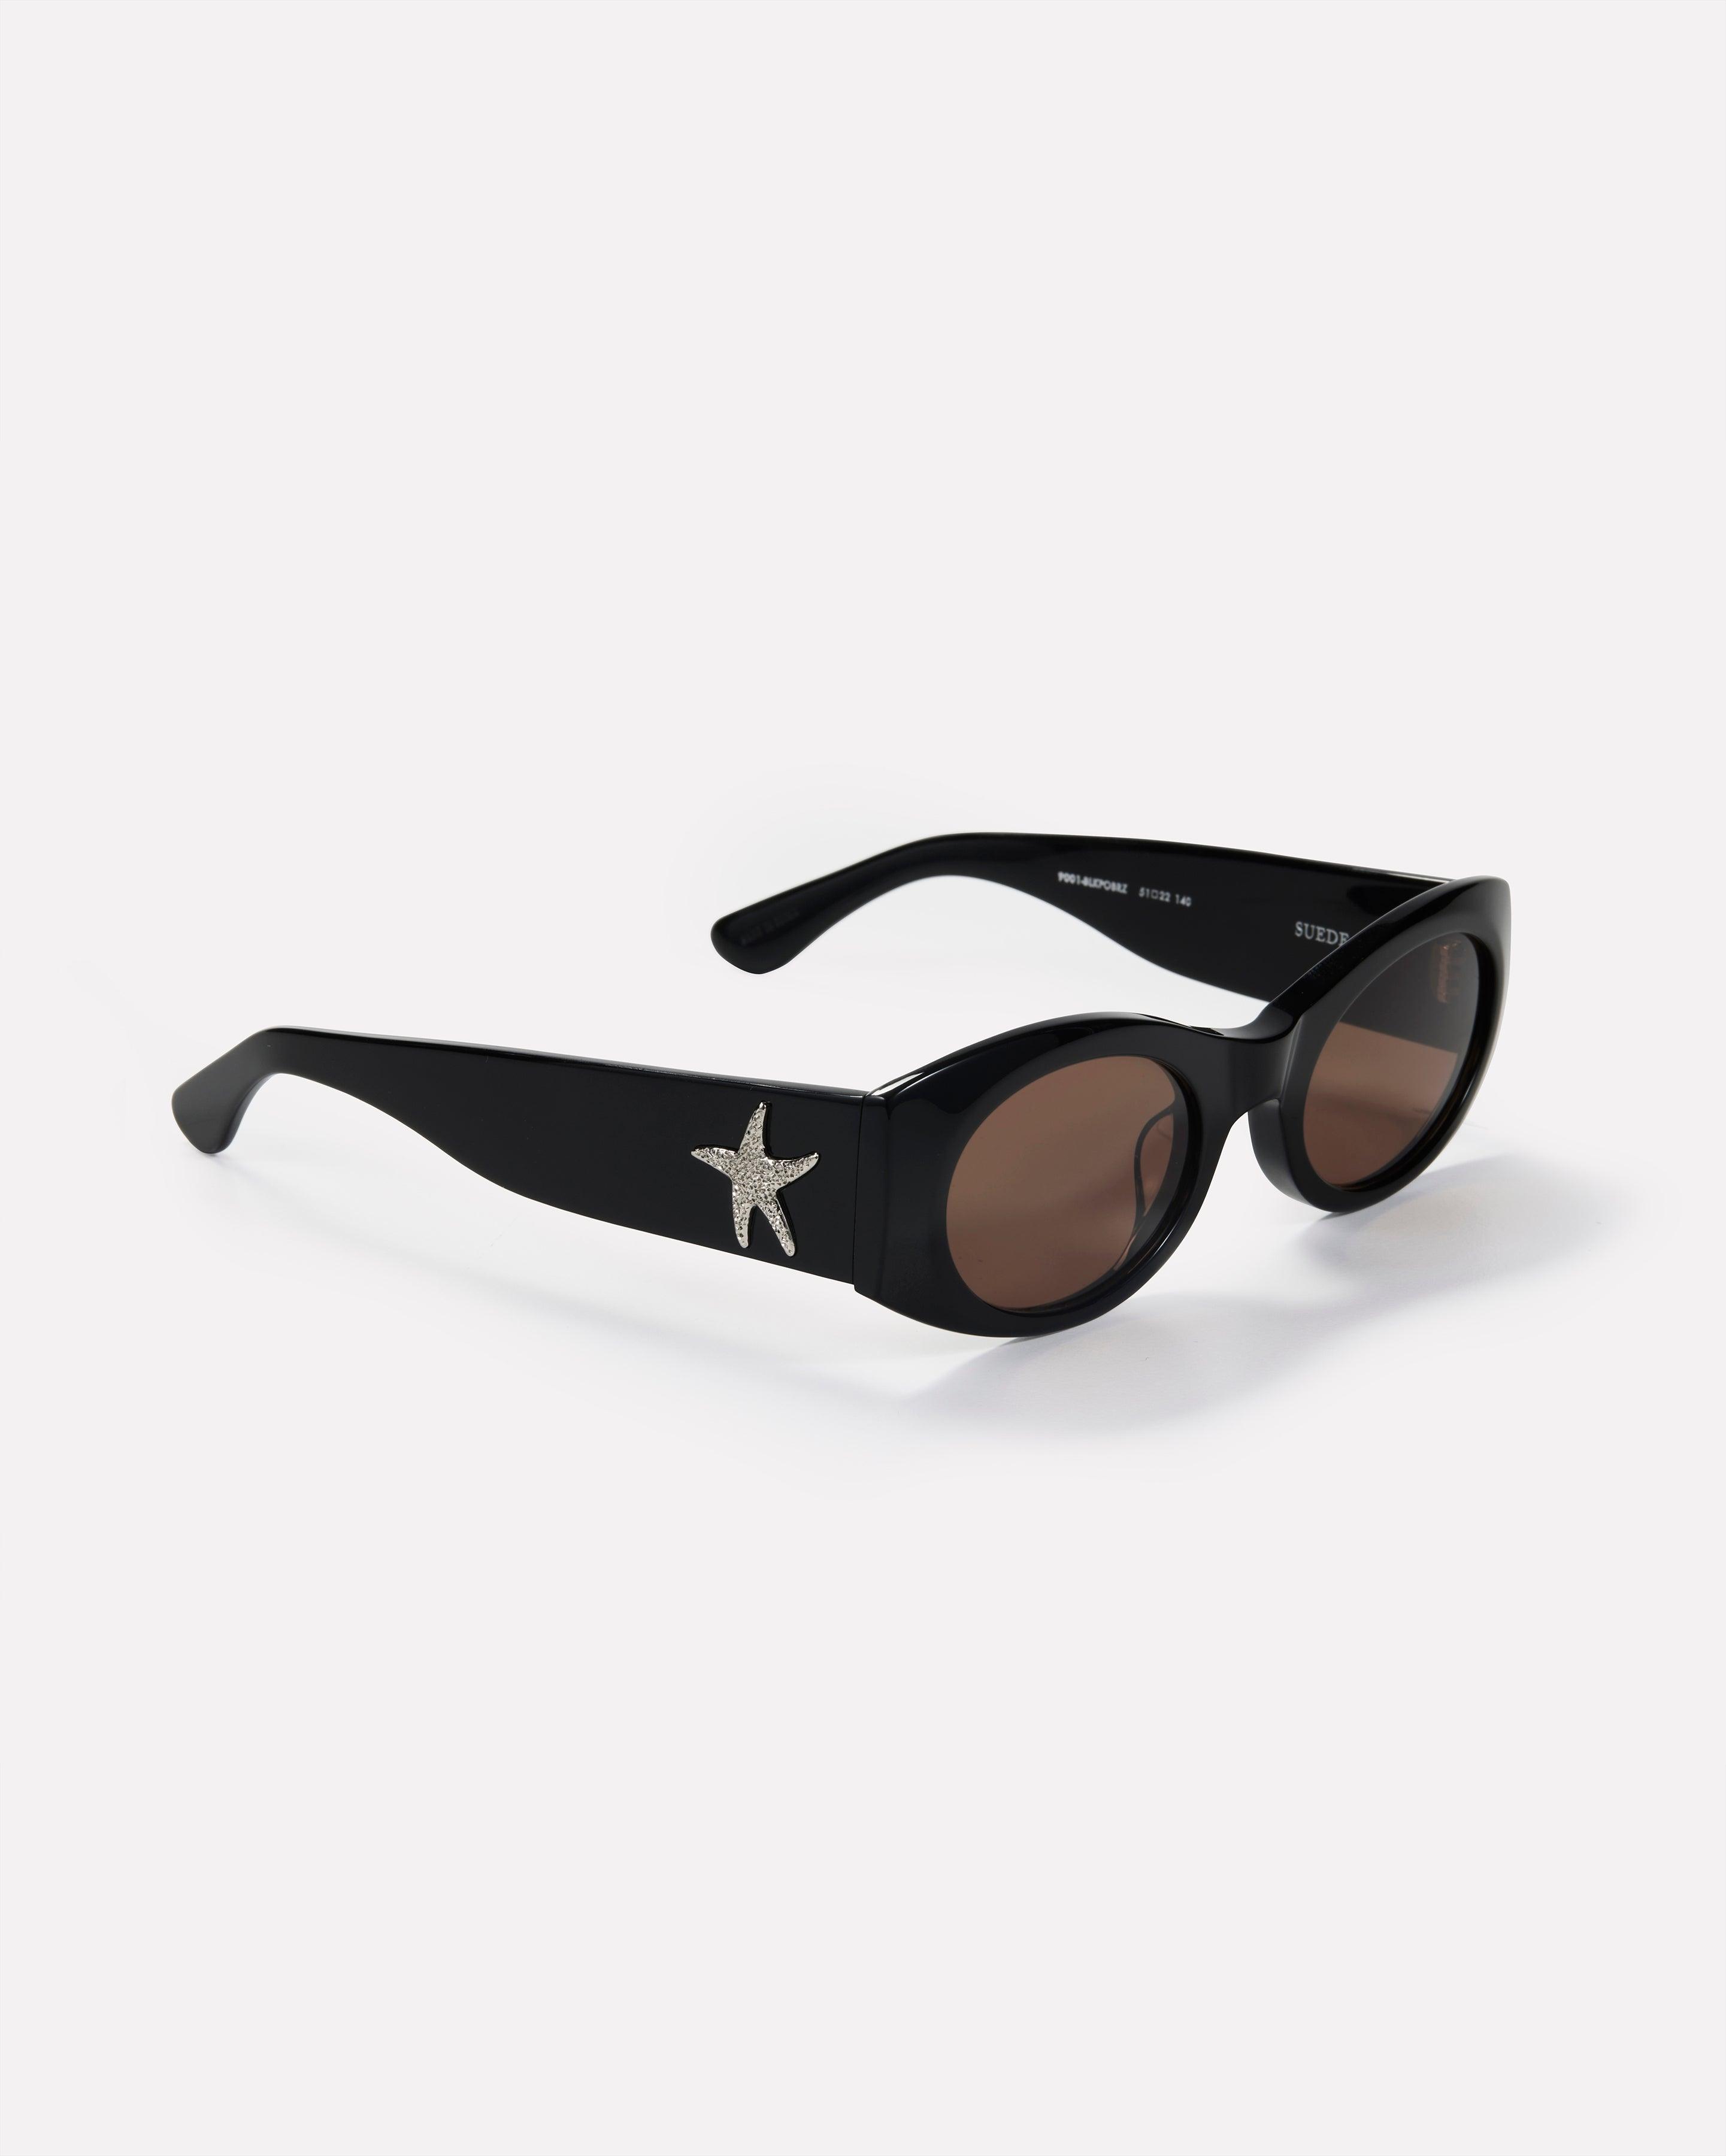 Suede - Black Polished / Bronze Amber - Sunglasses - EPOKHE EYEWEAR